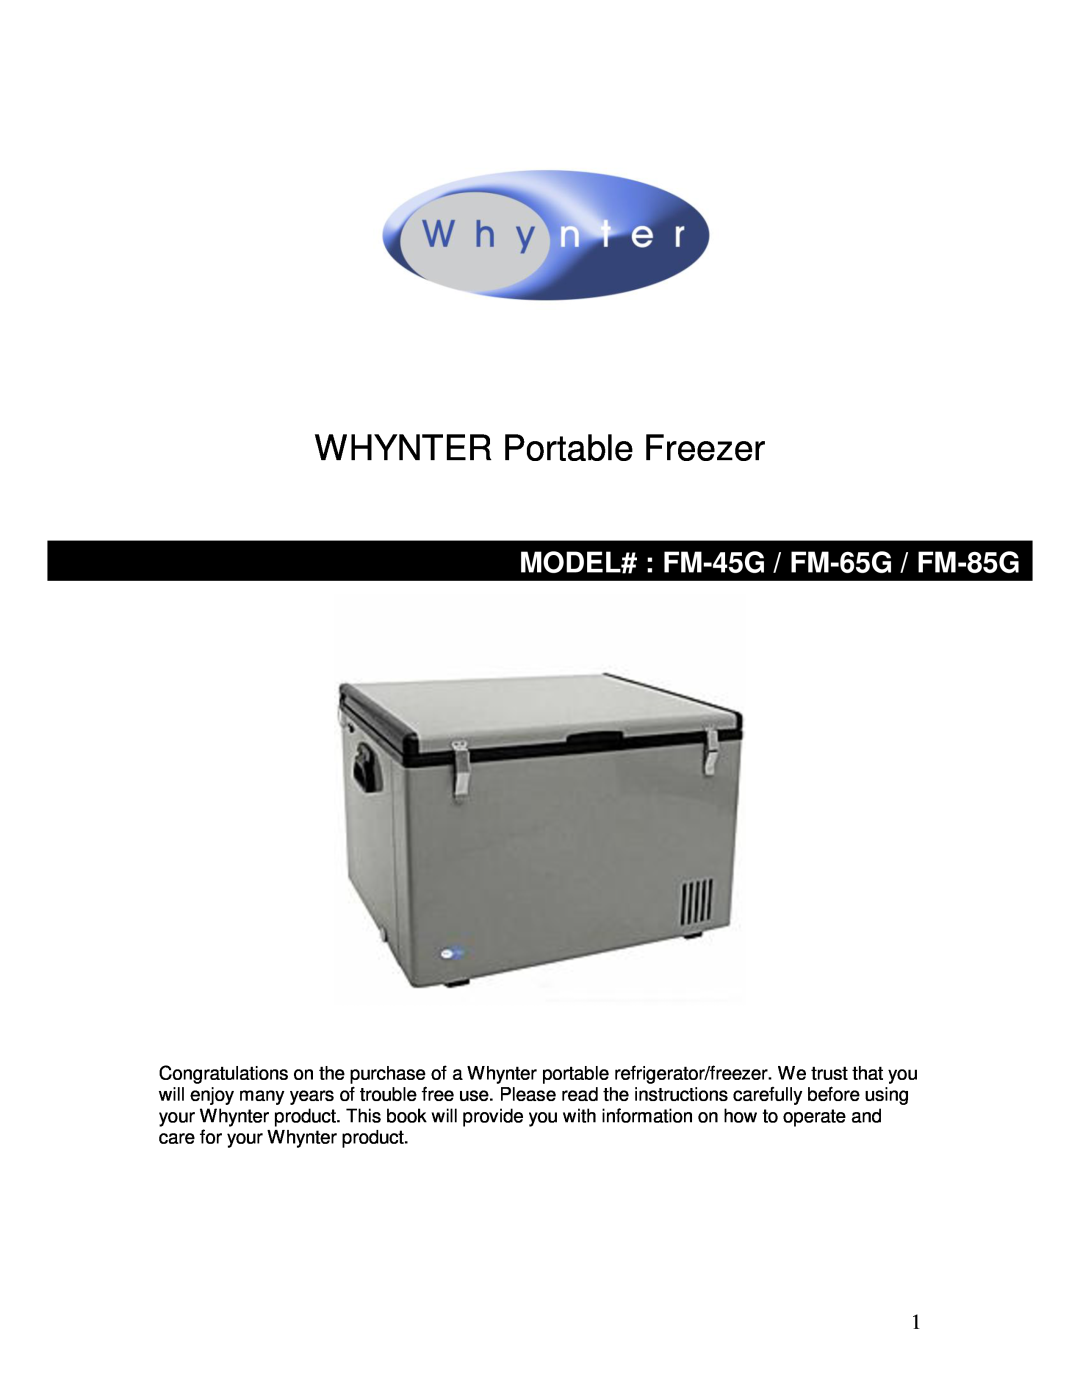 Whynter fm-65g manual WHYNTER Portable Freezer, MODEL# FM-45G / FM-65G / FM-85G 